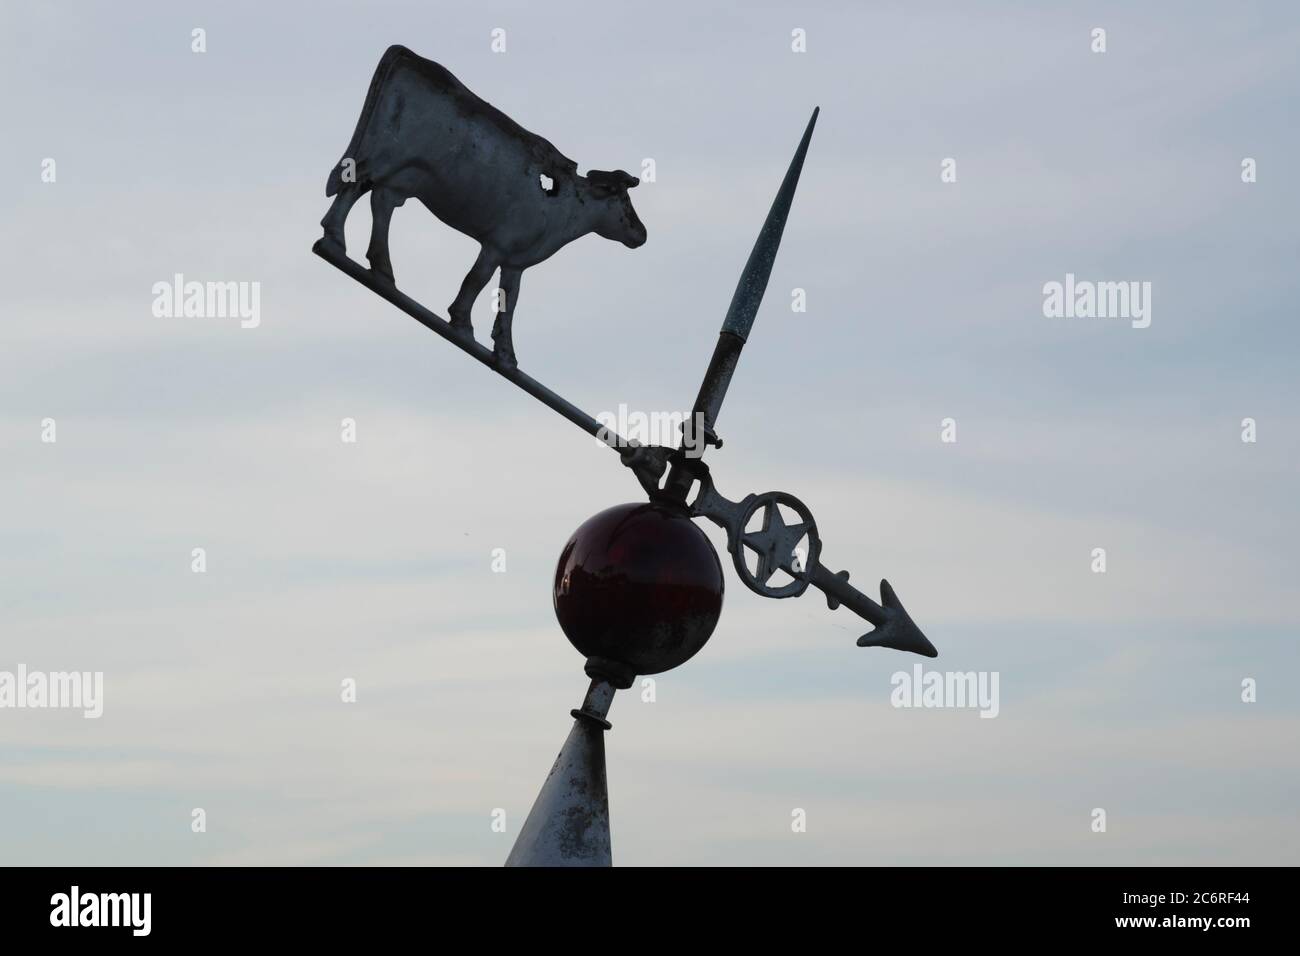 Une vieille girouette inclinée avec sculpture d'une vache laitière. Banque D'Images